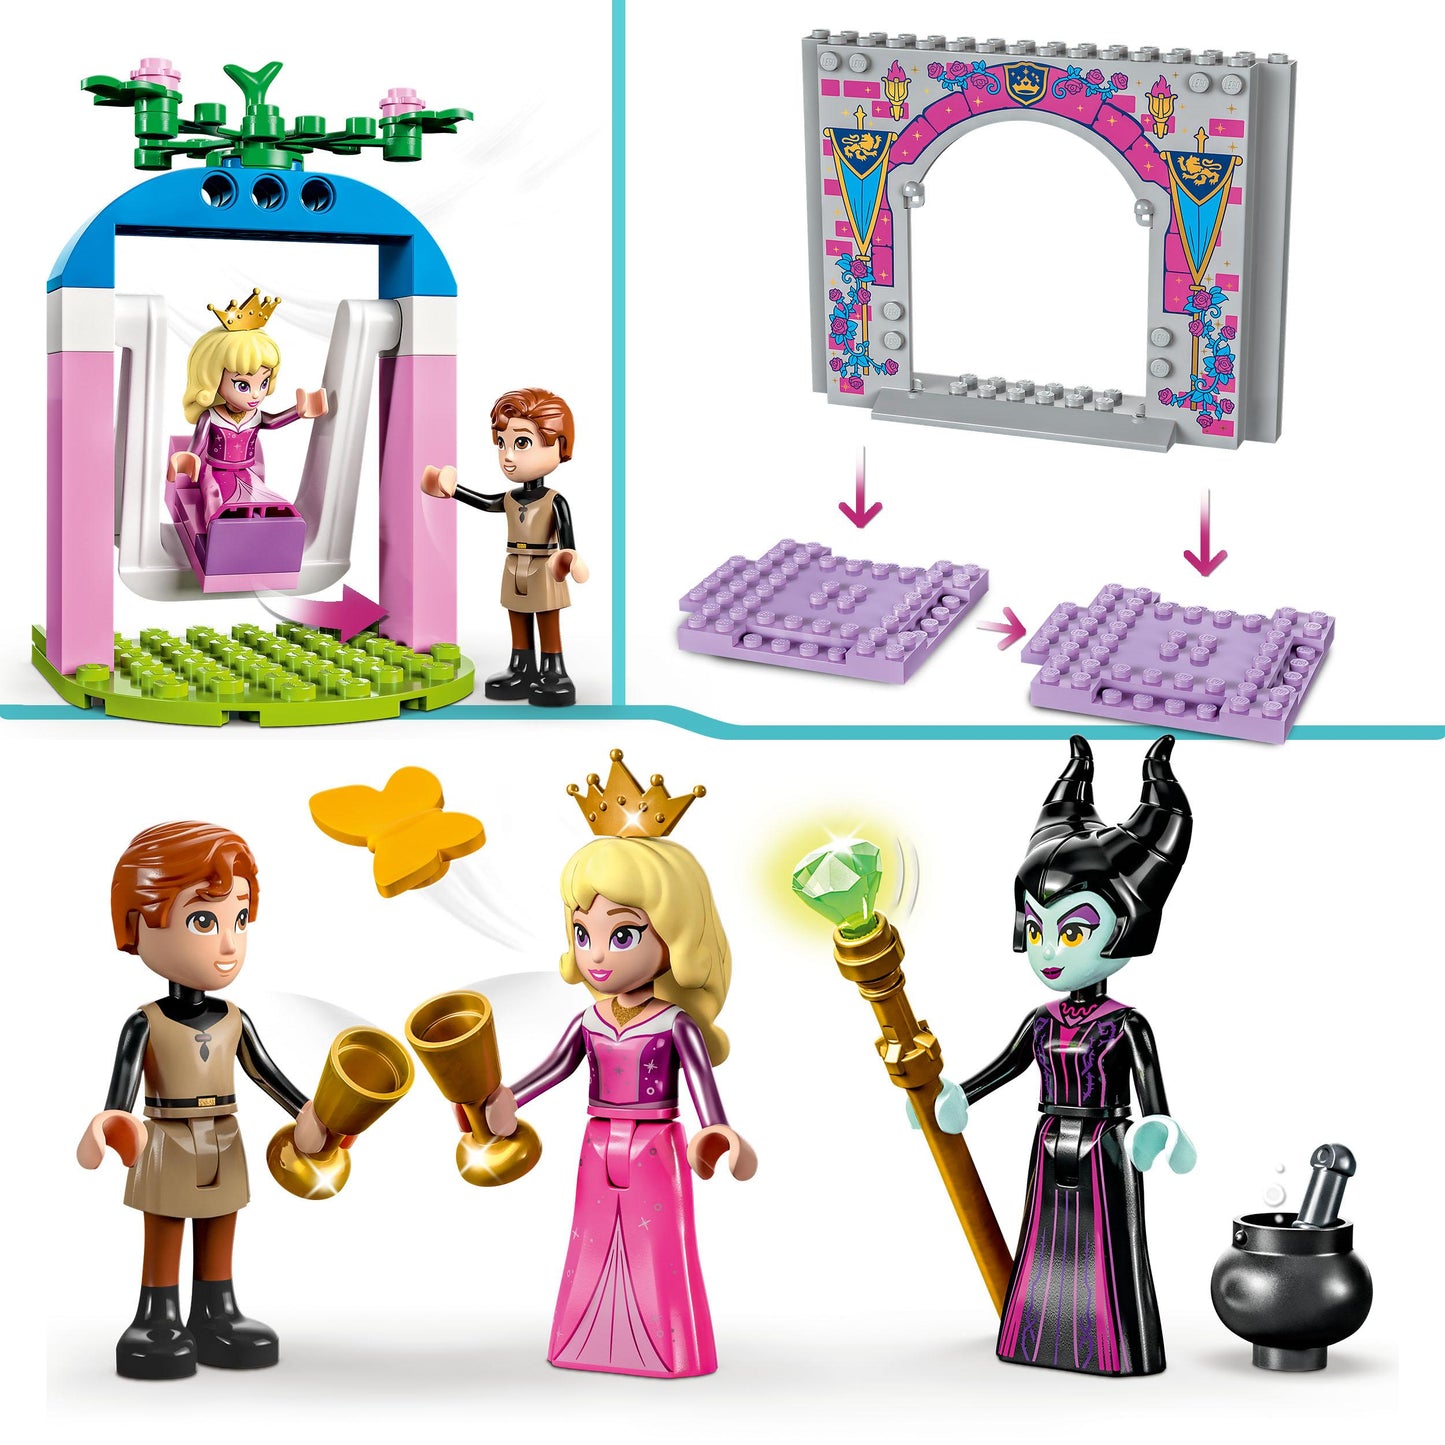 43211 LEGO Disney - Il Castello di Aurora